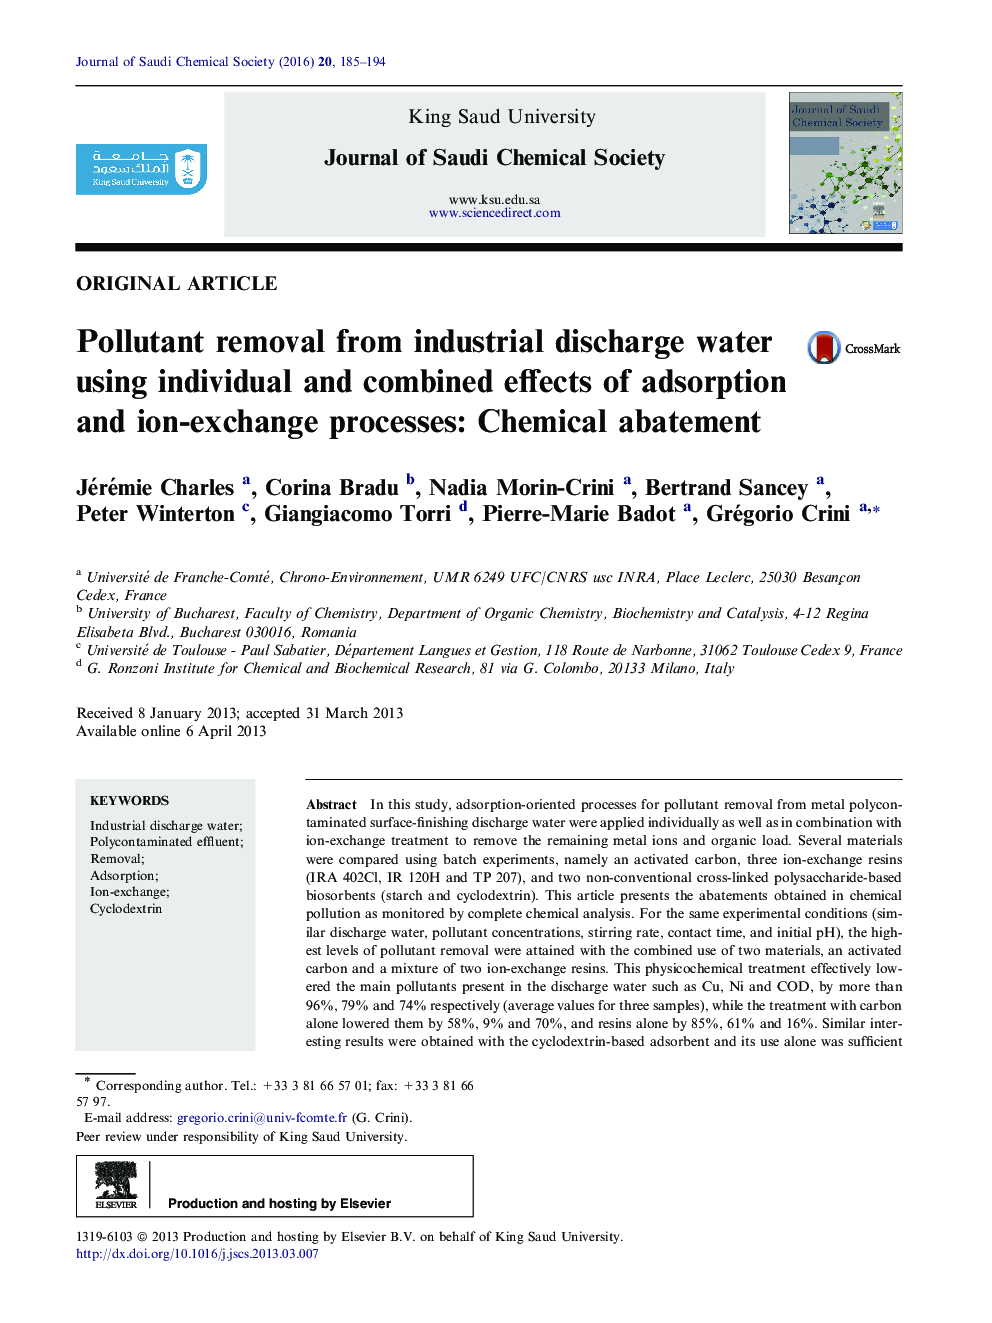 حذف آلاینده از آب آشامیدنی صنعتی با استفاده از اثرات فردی و ترکیبی جذب و فرآیندهای تبادل یونی: کاهش مواد شیمیایی 